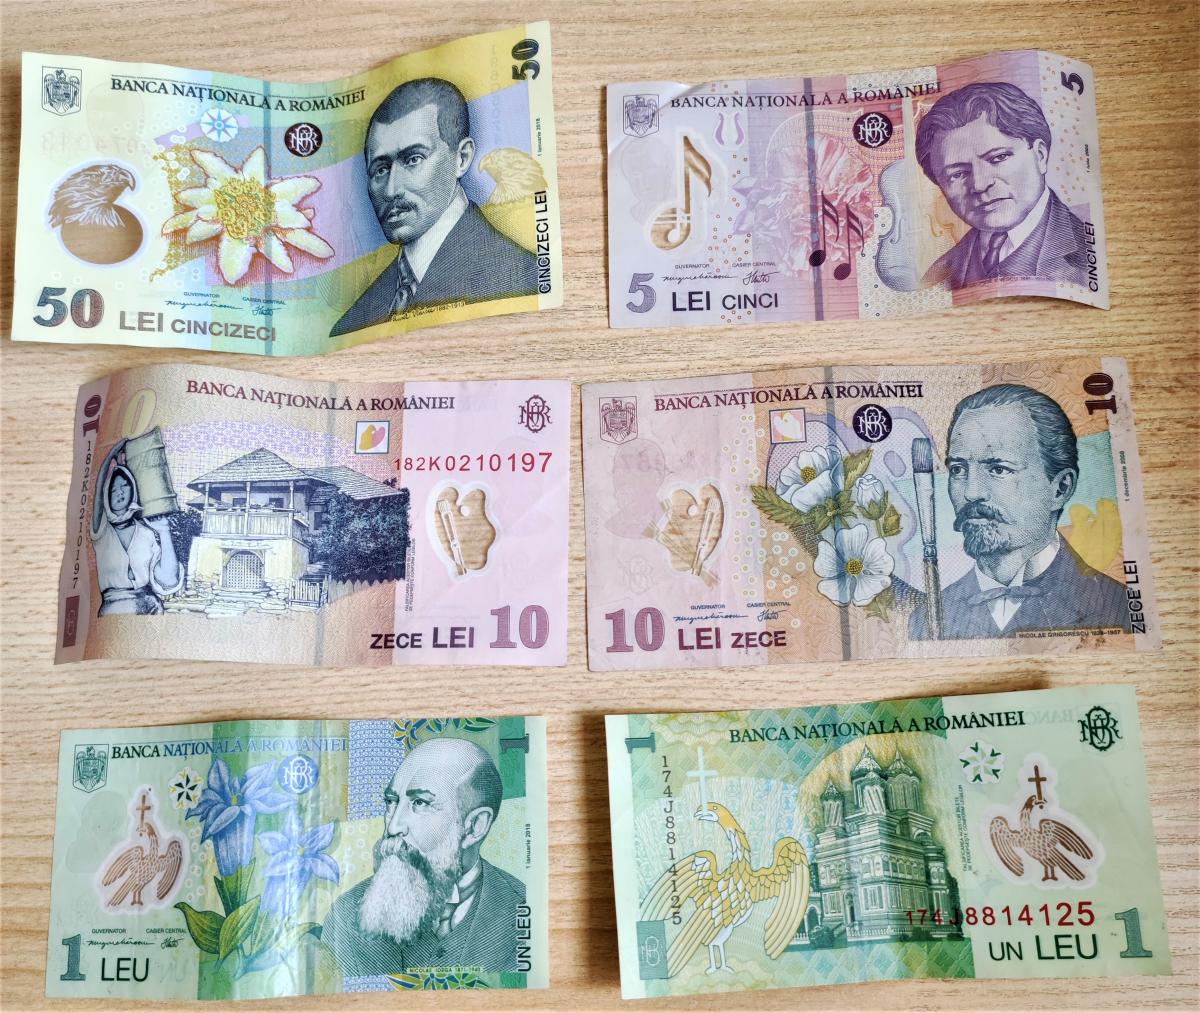 Румынская валюта – лей / фото Марина Григоренко